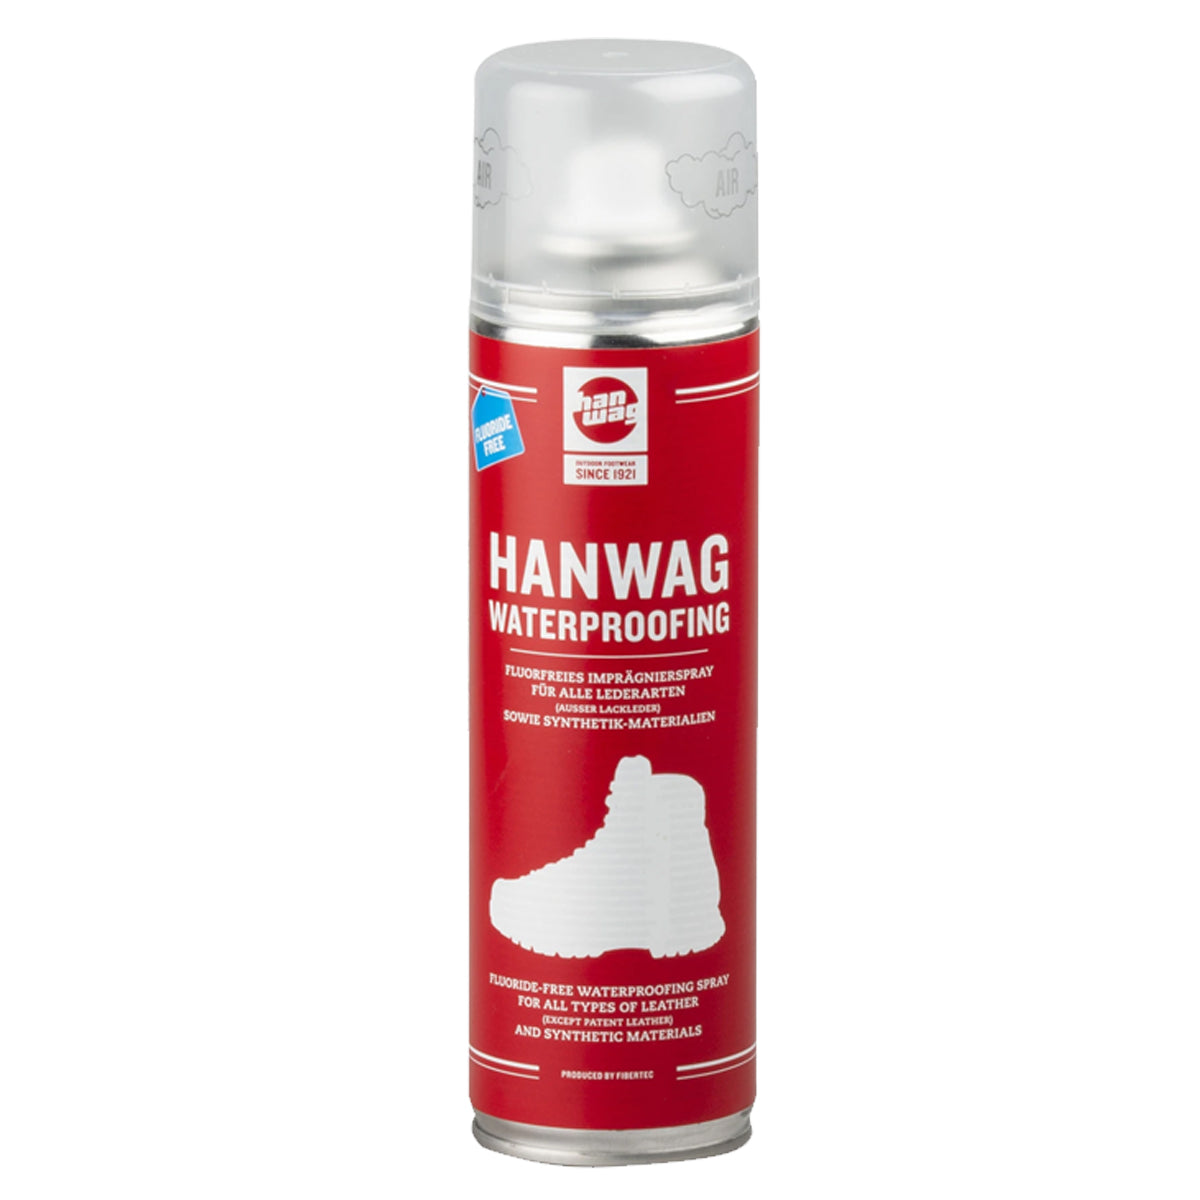 Hanwag Waterproofing in  by GOHUNT | Hanwag - GOHUNT Shop